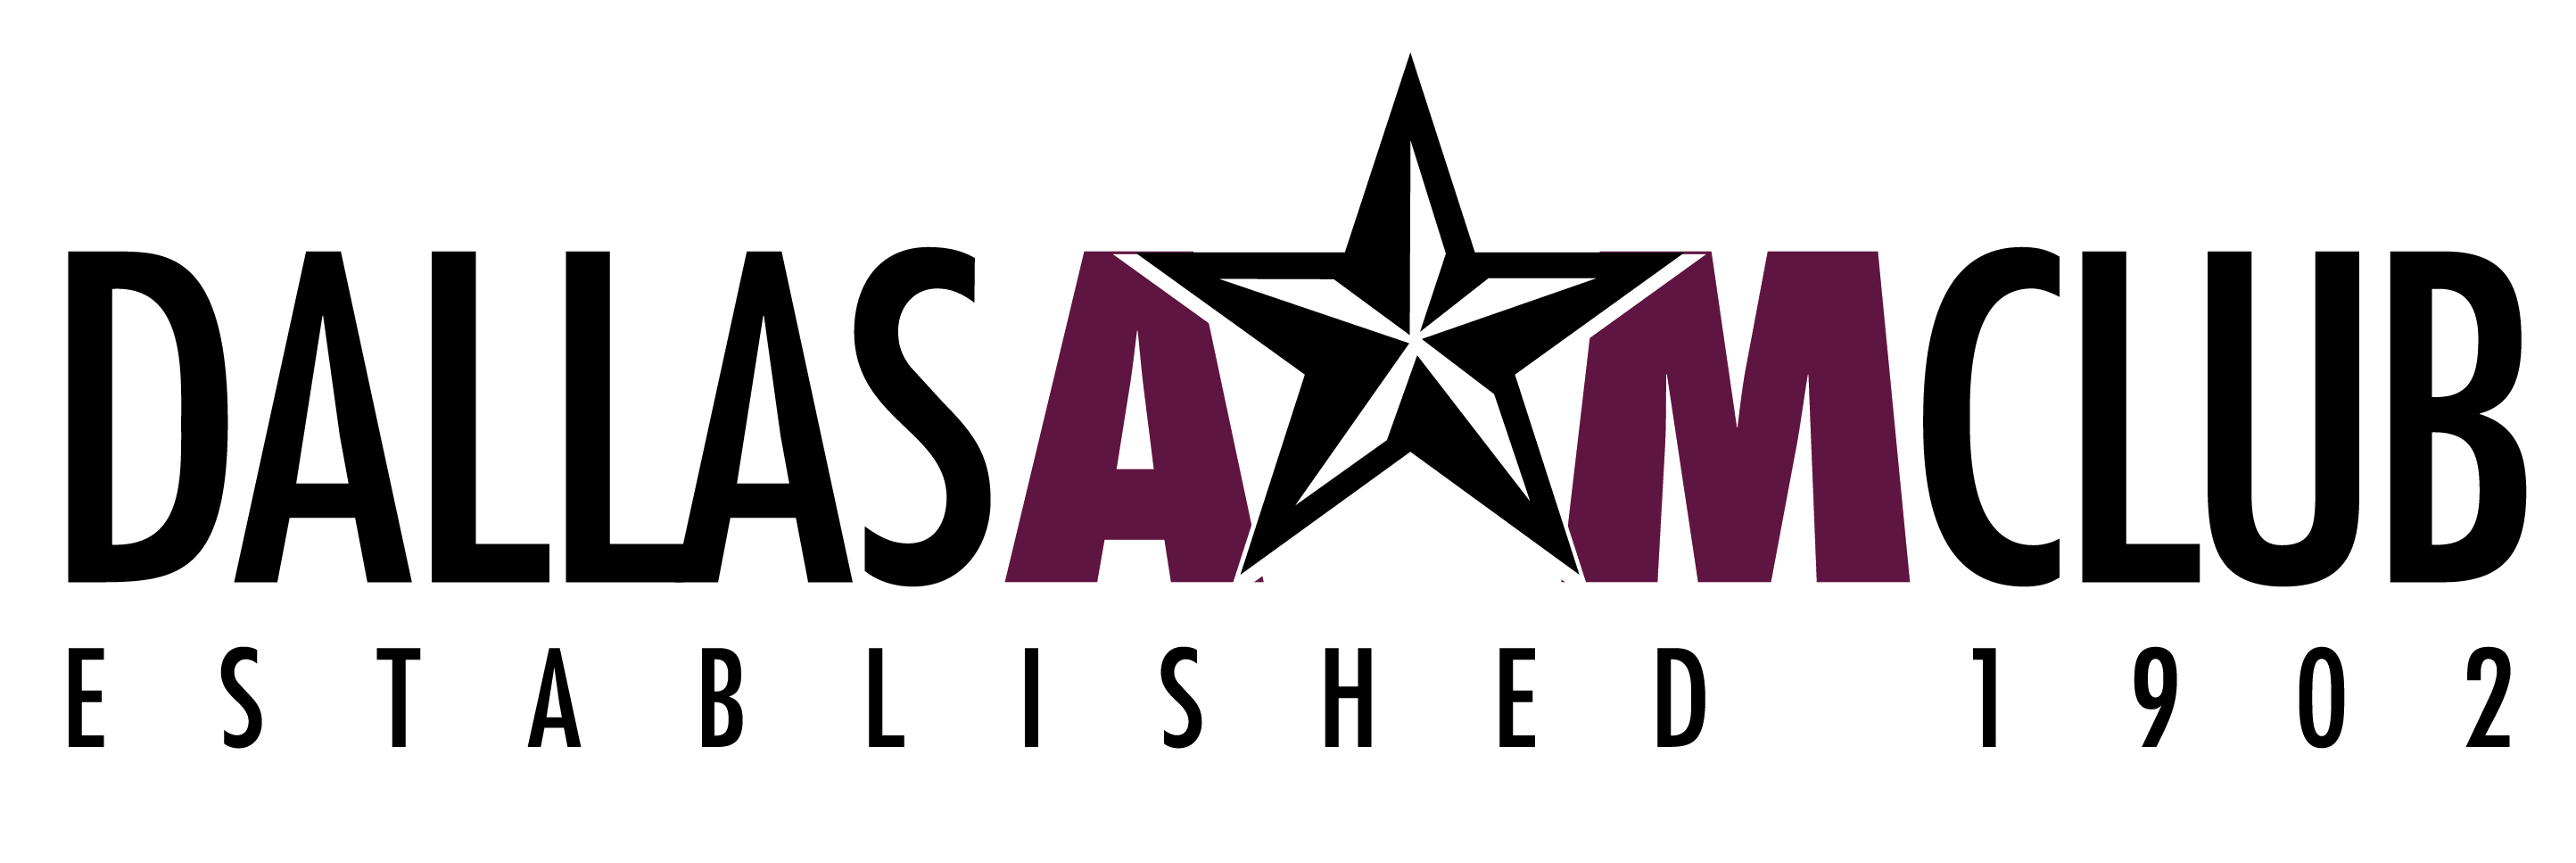 Dallas A&M Club logo graphic